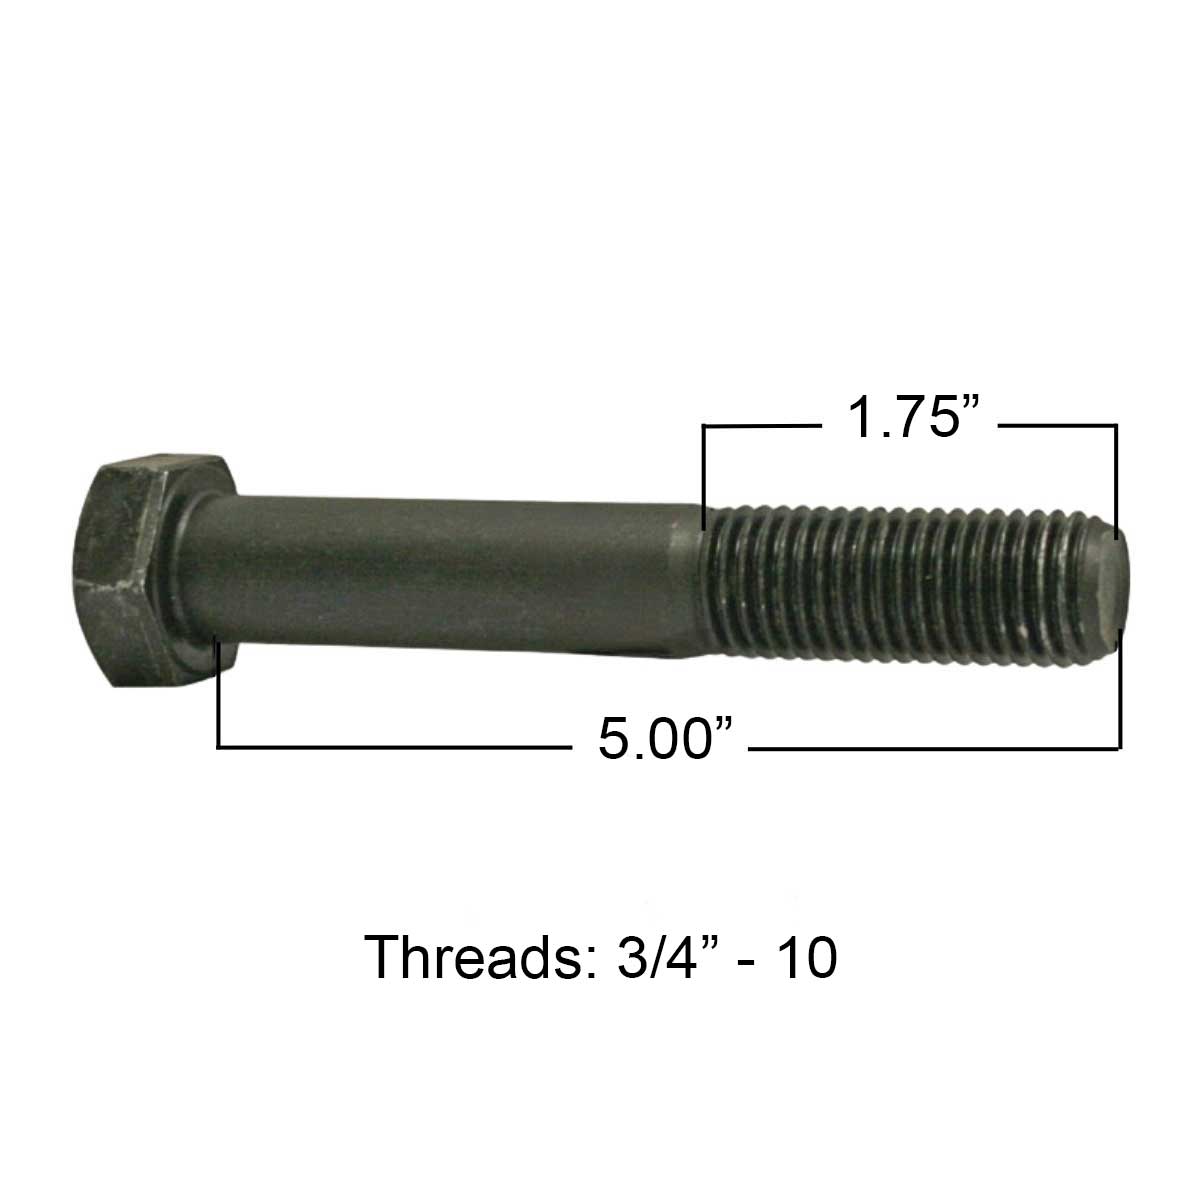 Universal leaf spring bolt M5122 measurements.